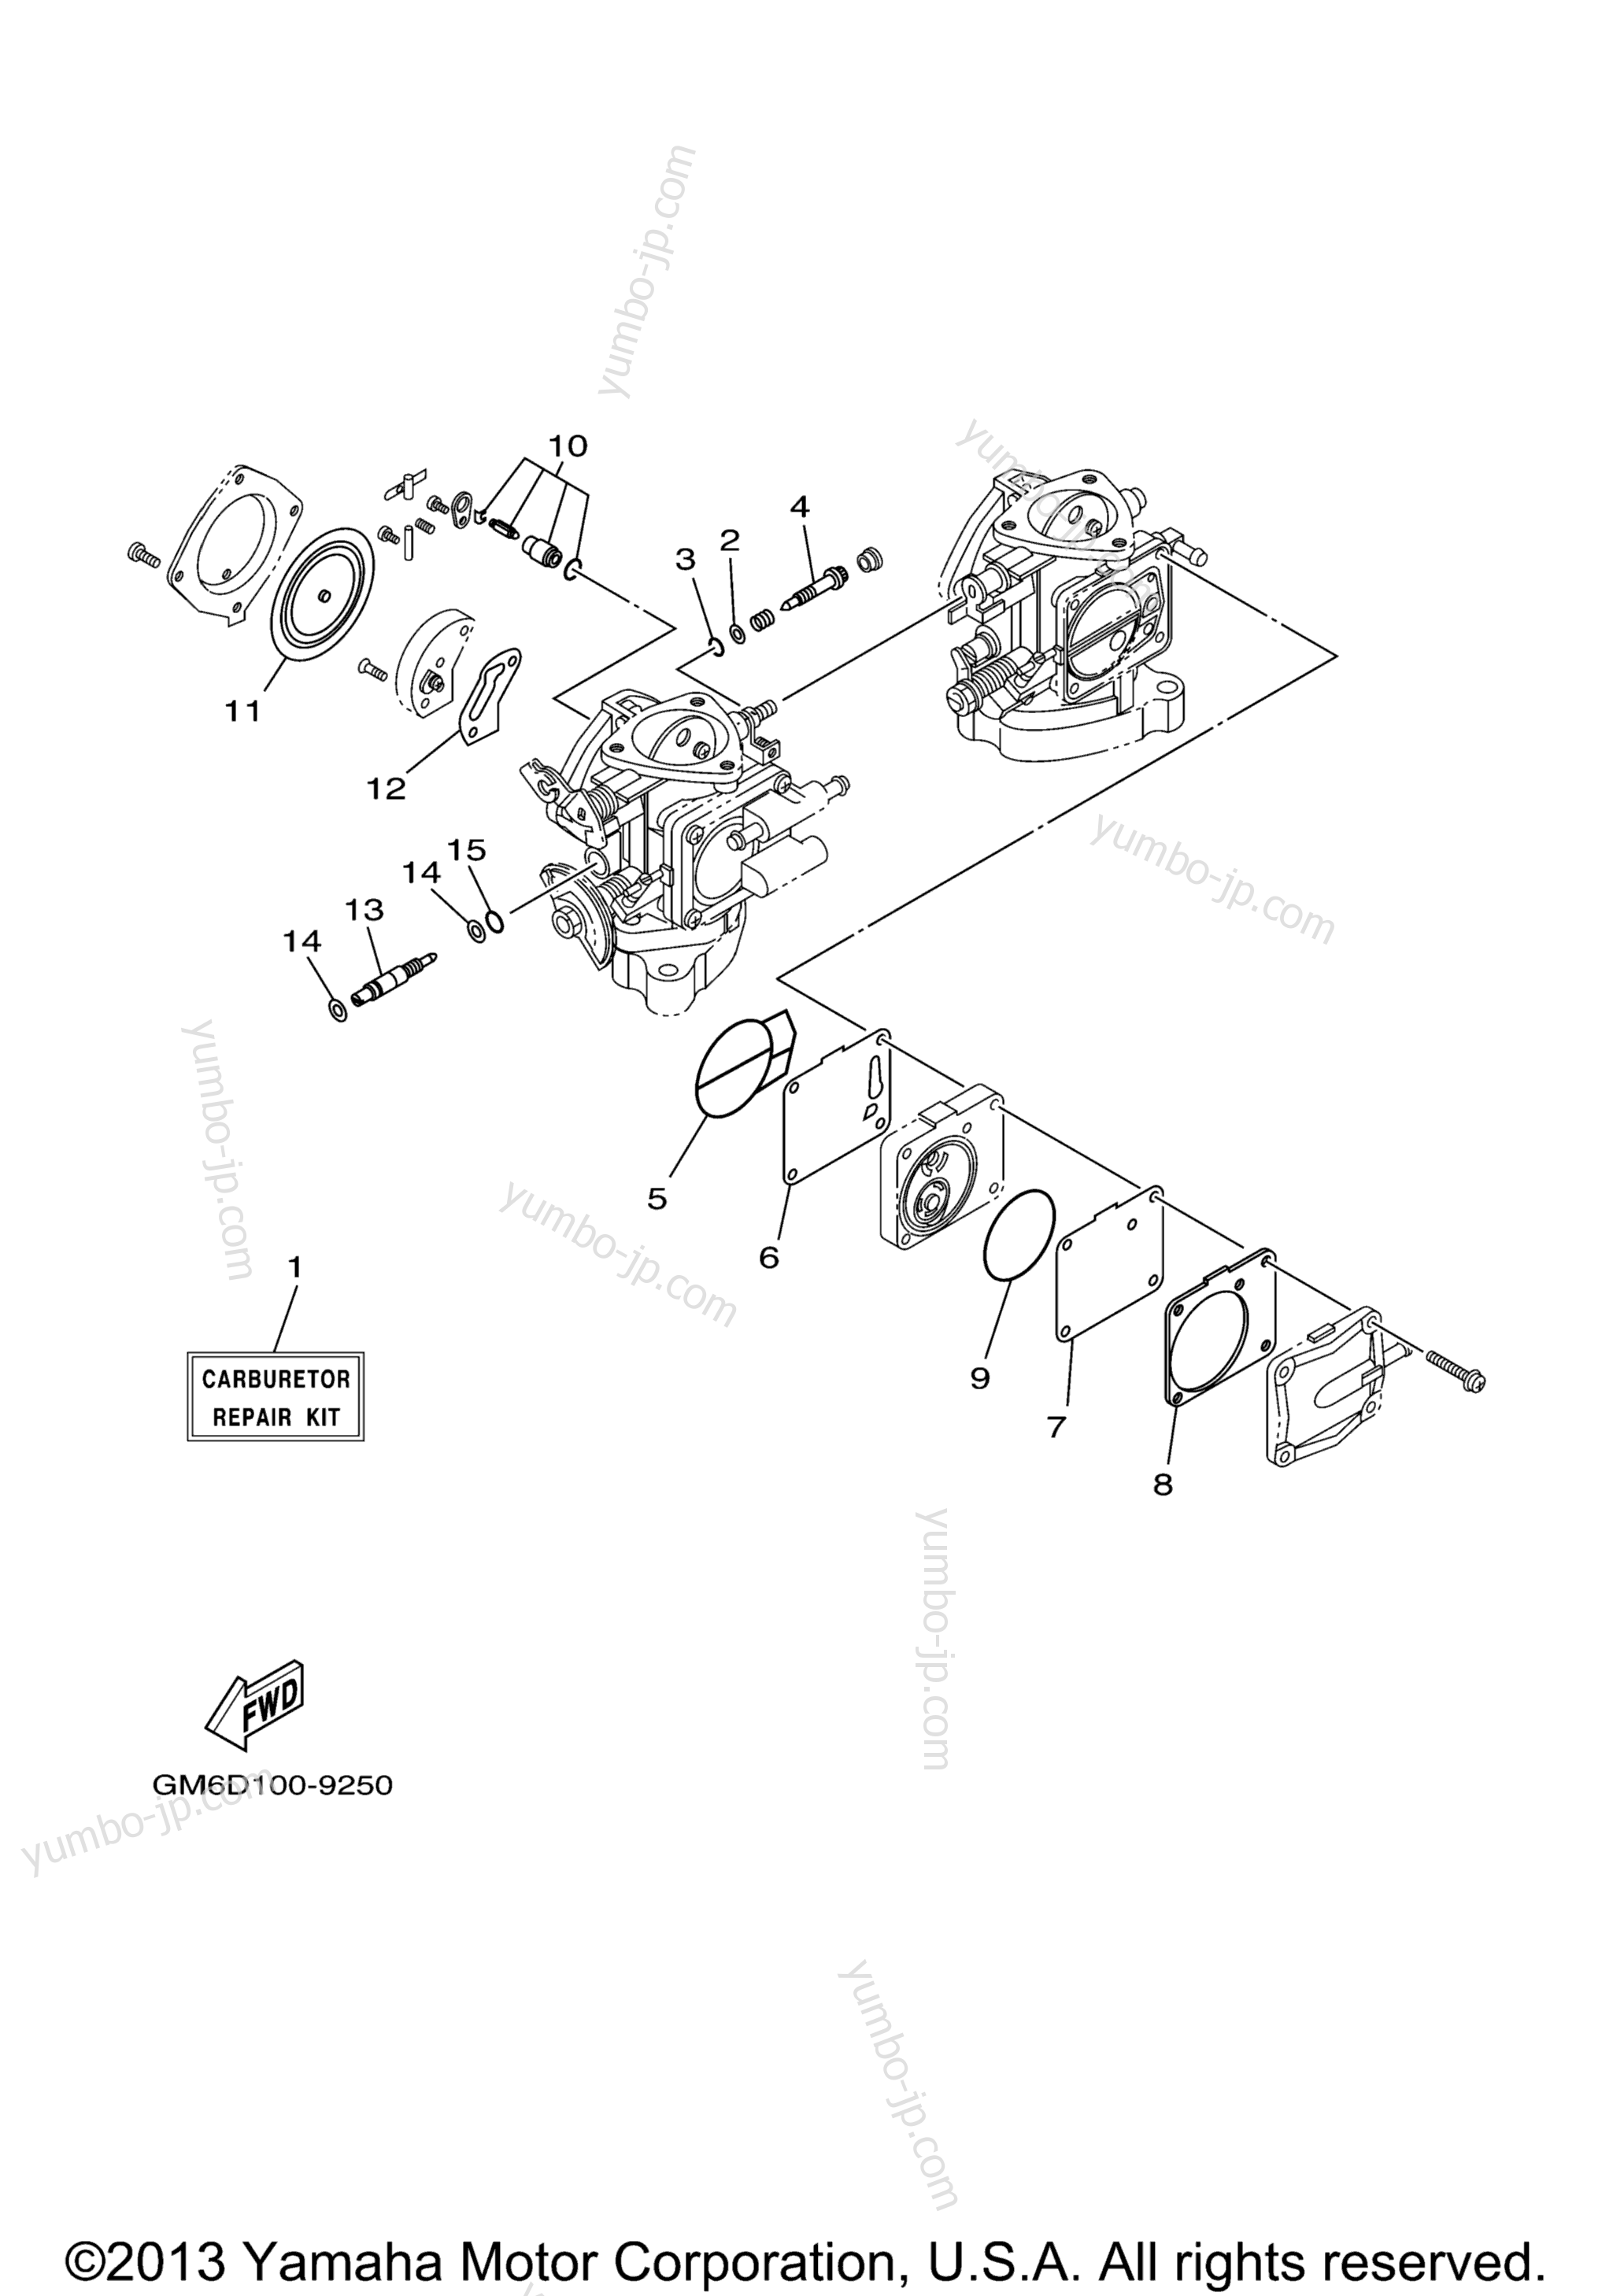 Repair Kit 2 для гидроциклов YAMAHA XL700 (XL700Y) 2000 г.